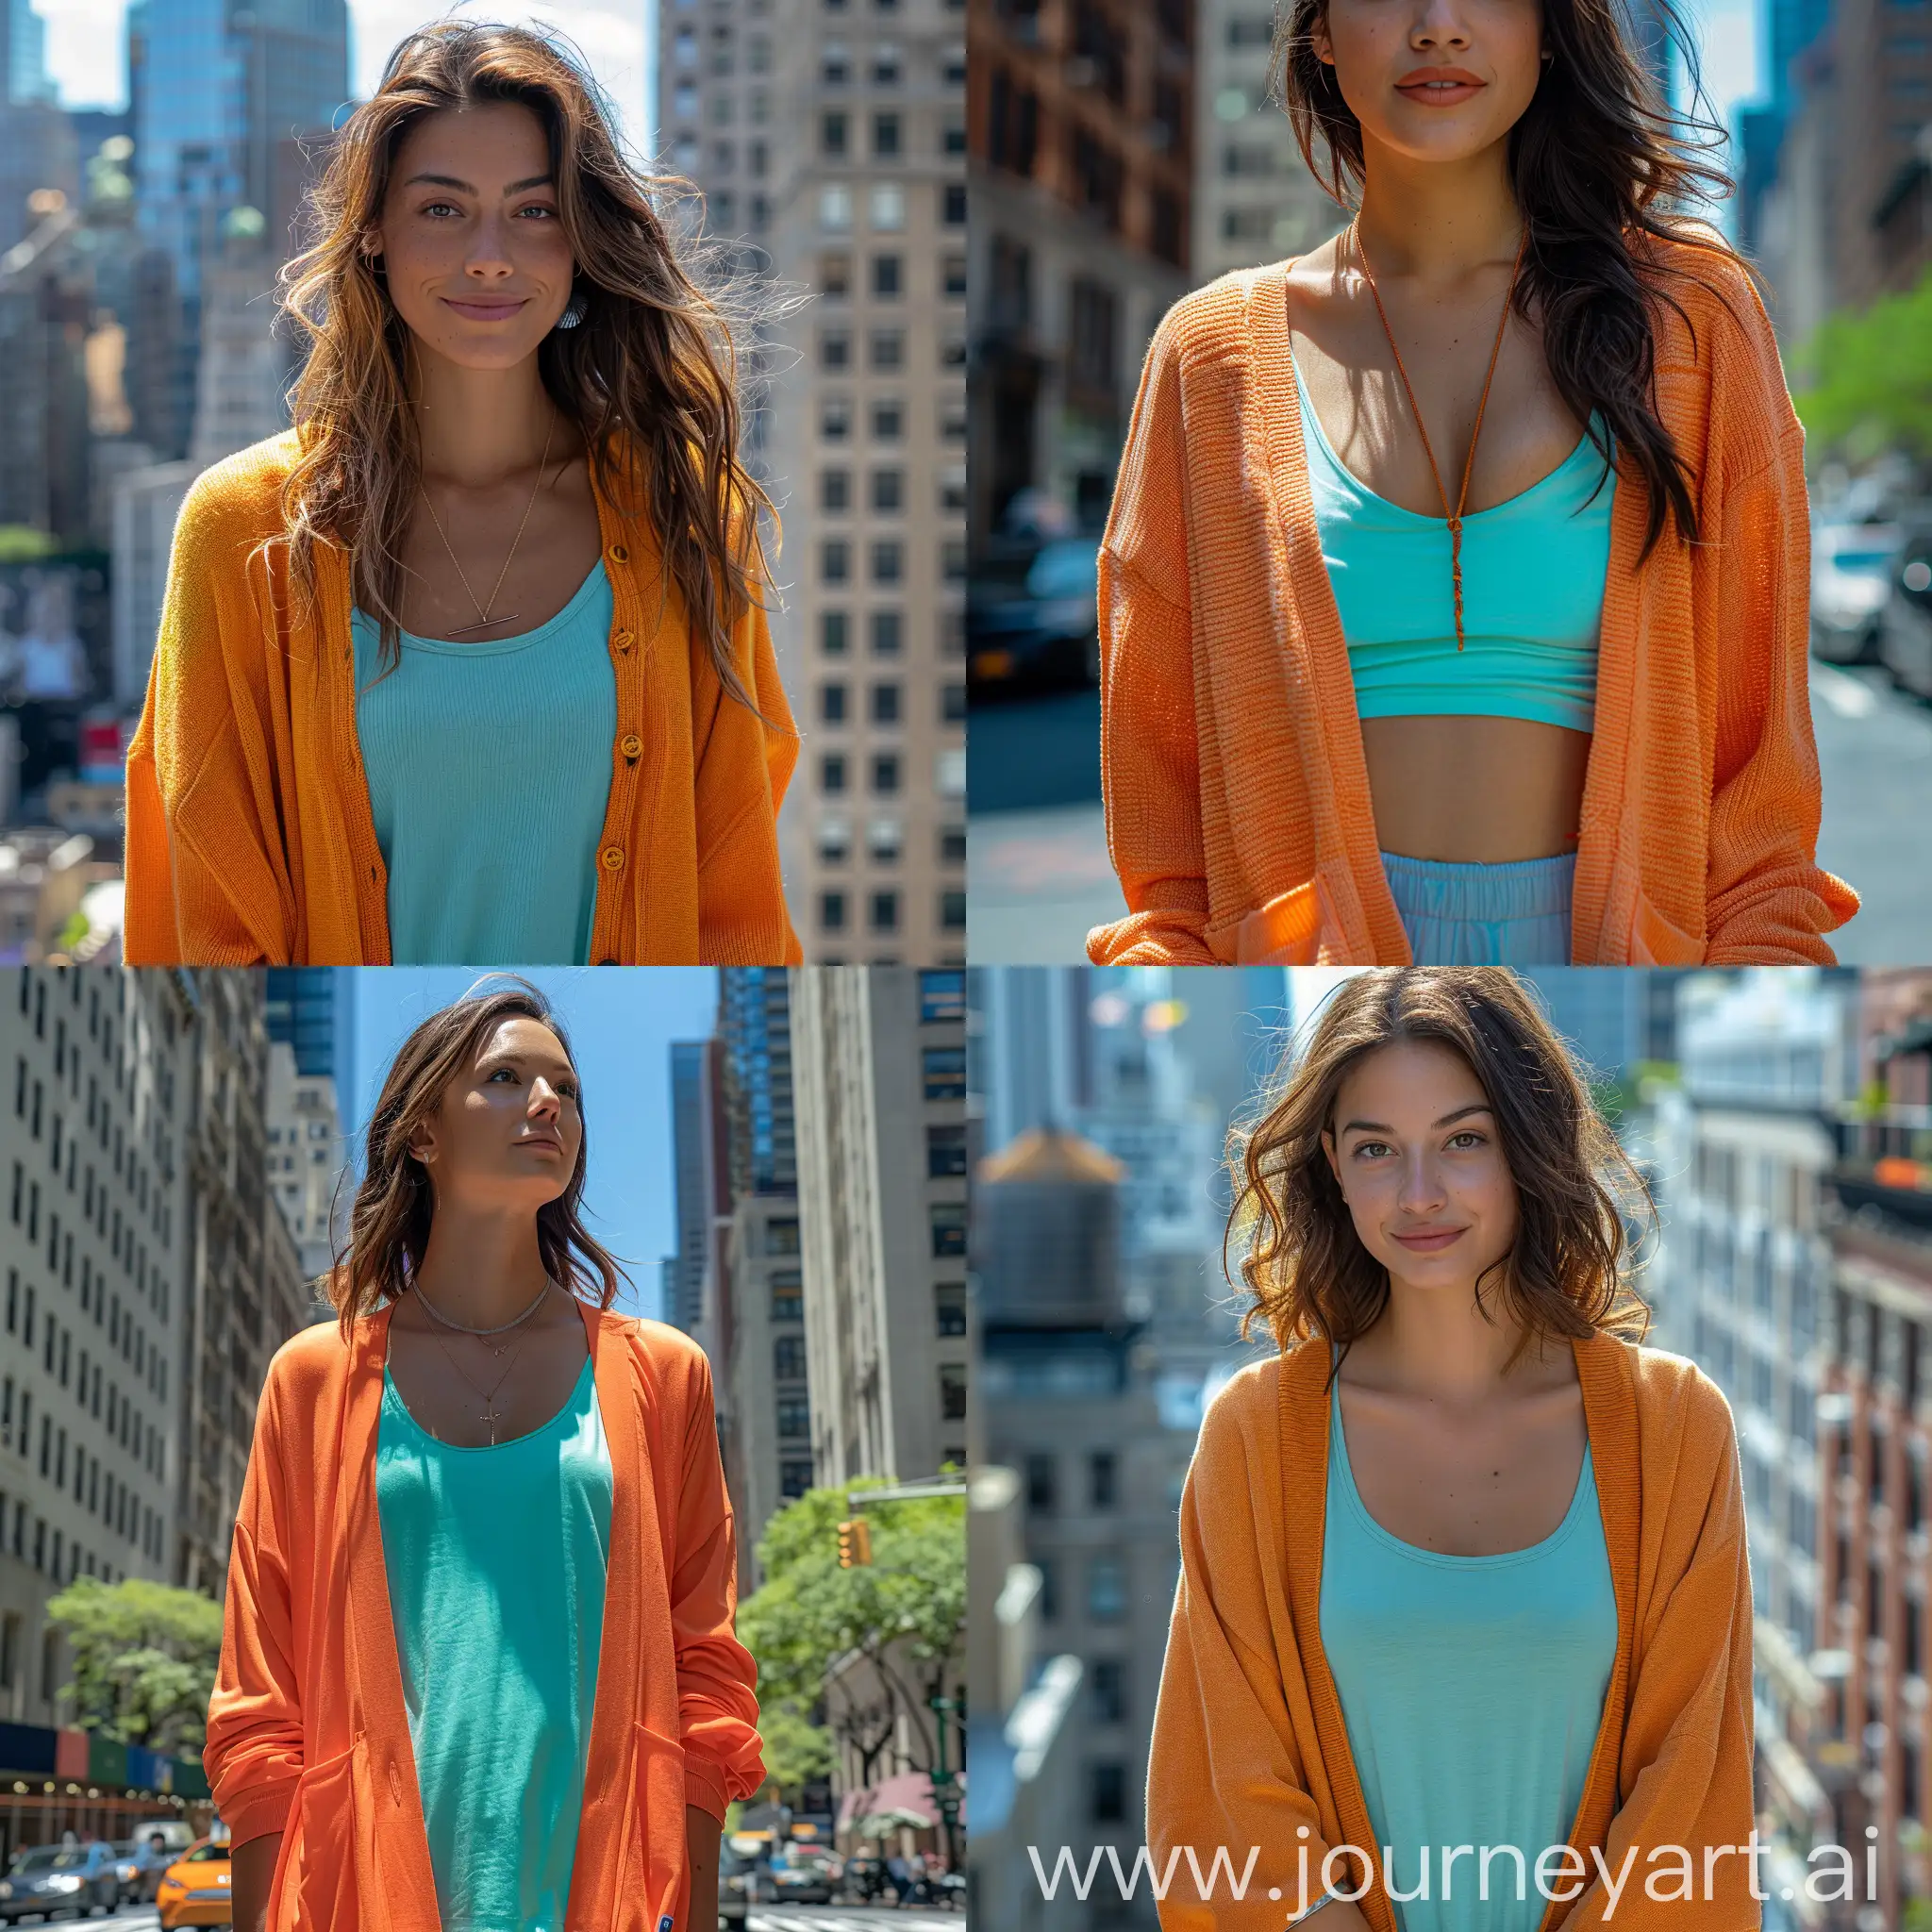 Urban-Street-Fashion-Stylish-Woman-in-Oversized-Orange-Cardigan-and-Cyan-Tank-Top